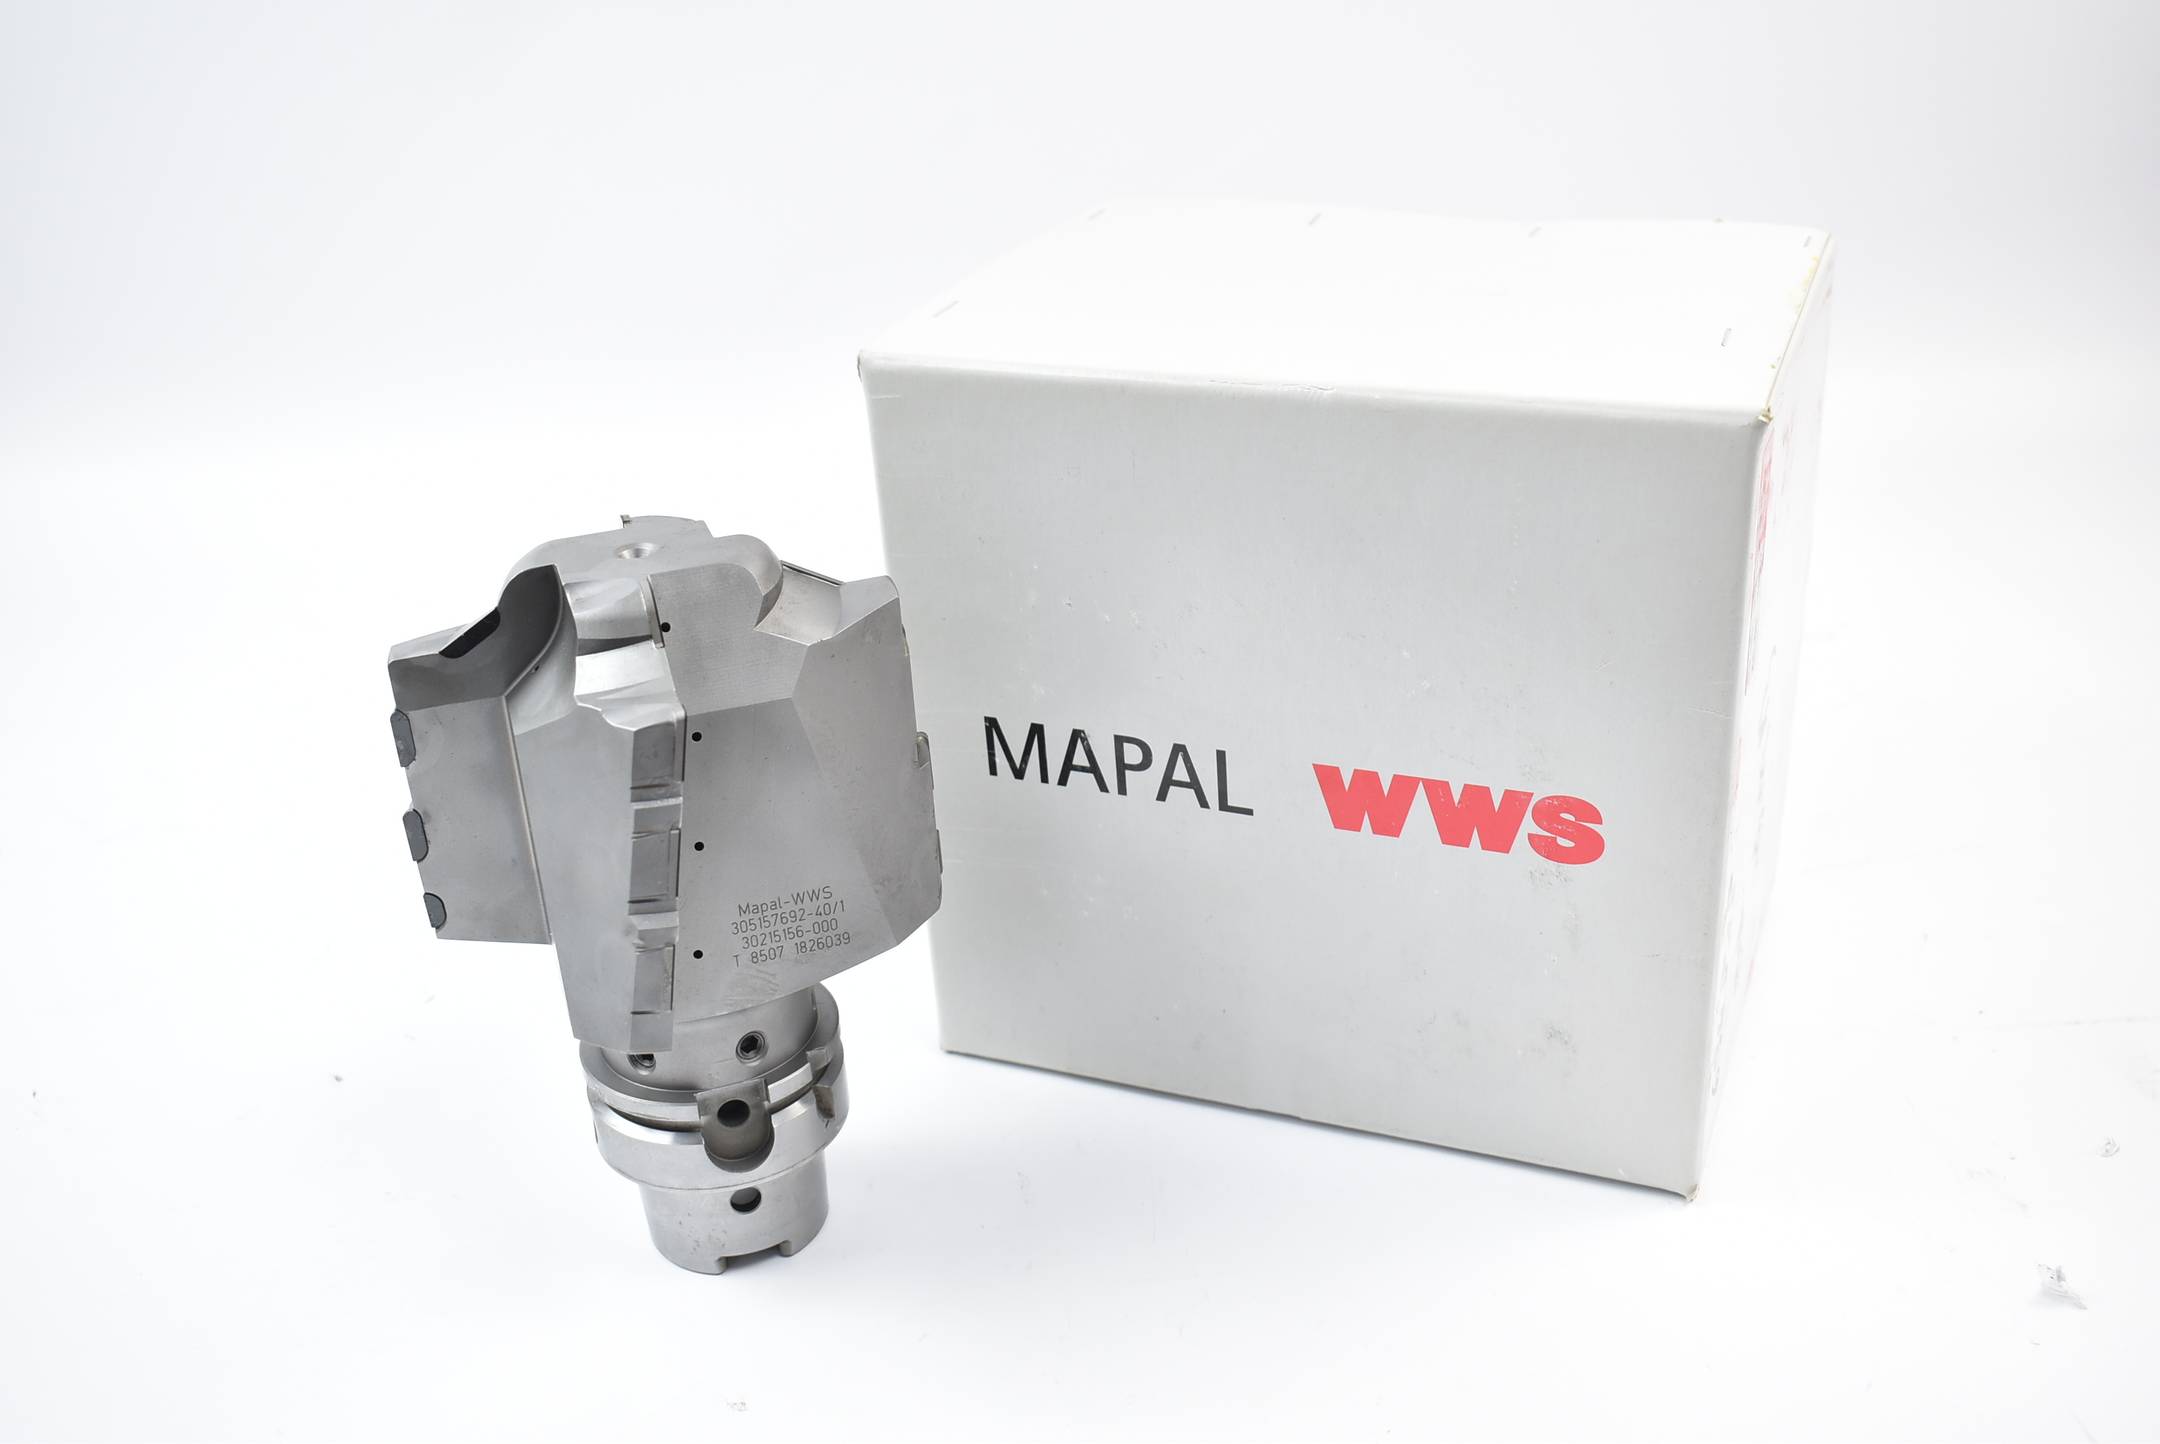 Mapal-WWS Fräskopf 305157692-40/1 ( 30215156-000 ) 1826039 T8507